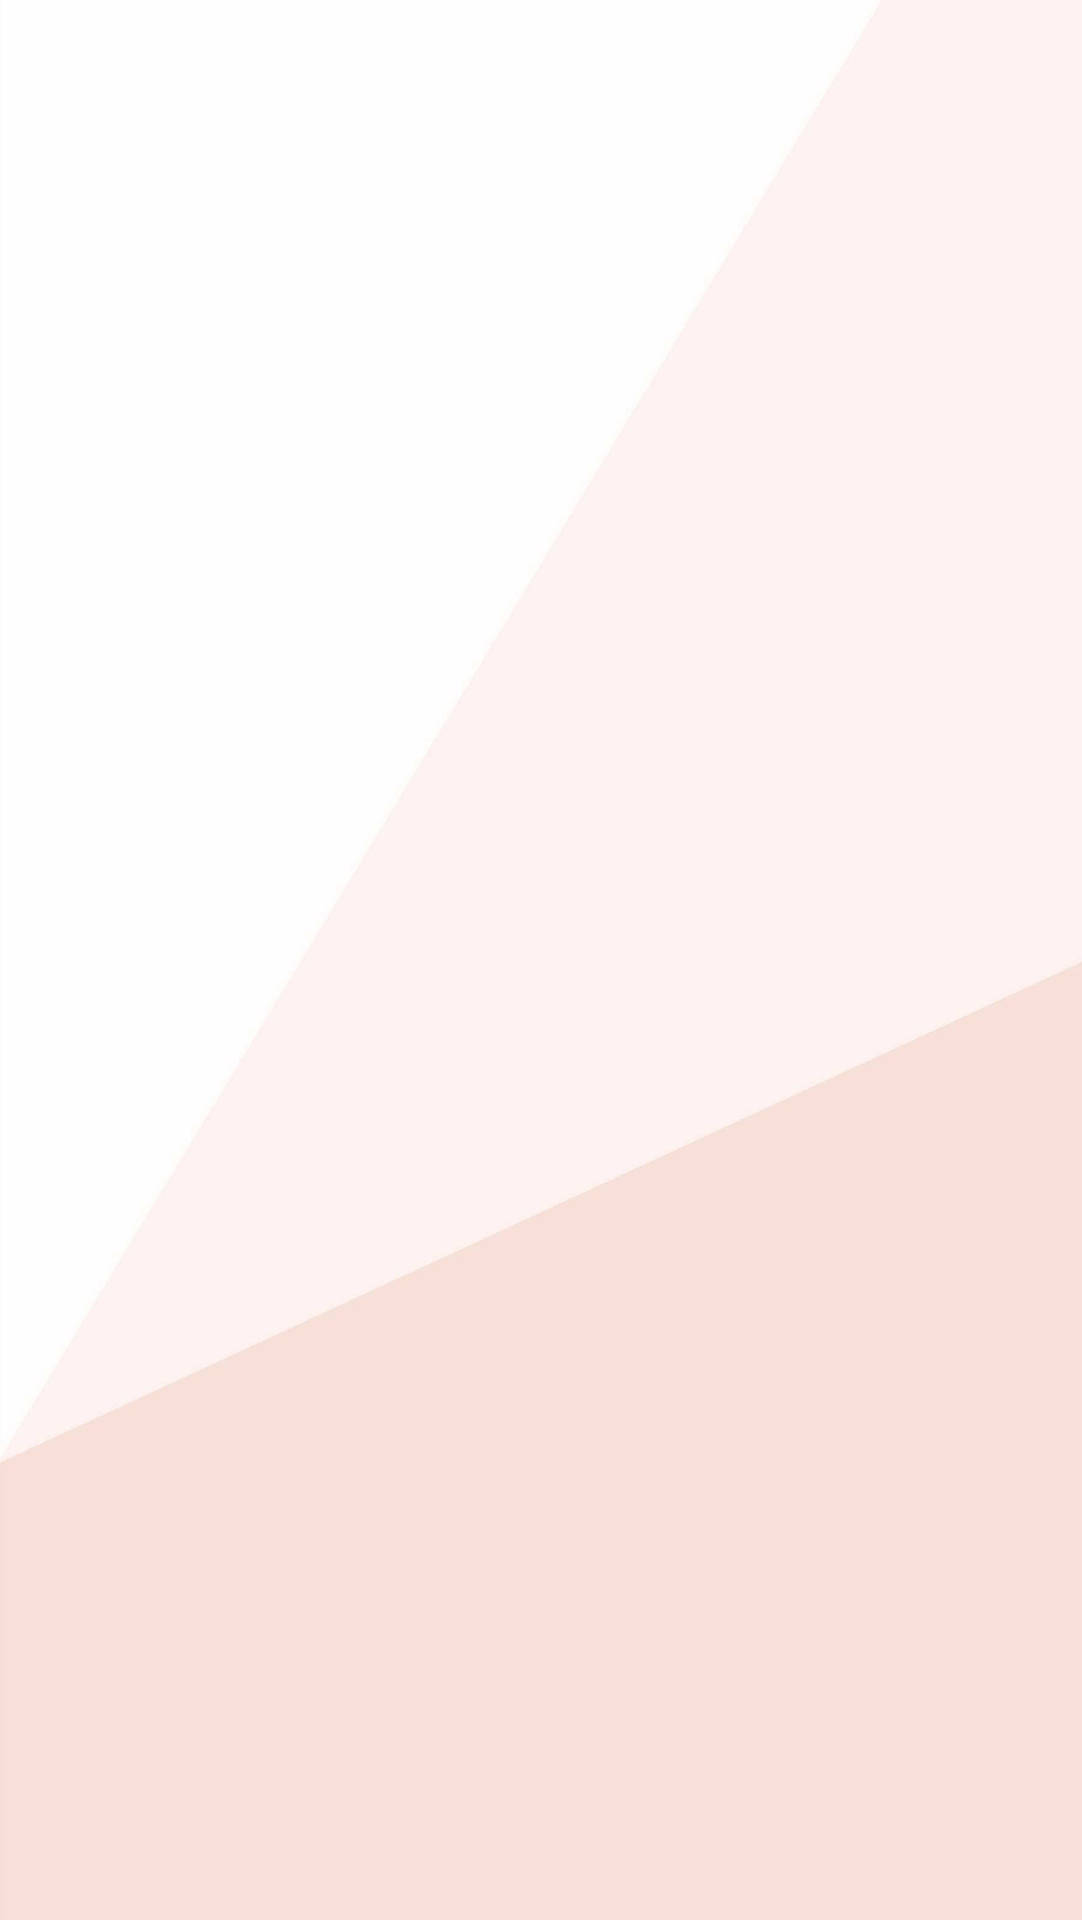 Bjorn Plain by Metropolitan Stories - Soft pink - Wallpaper : Wallpaper  Direct-sgquangbinhtourist.com.vn